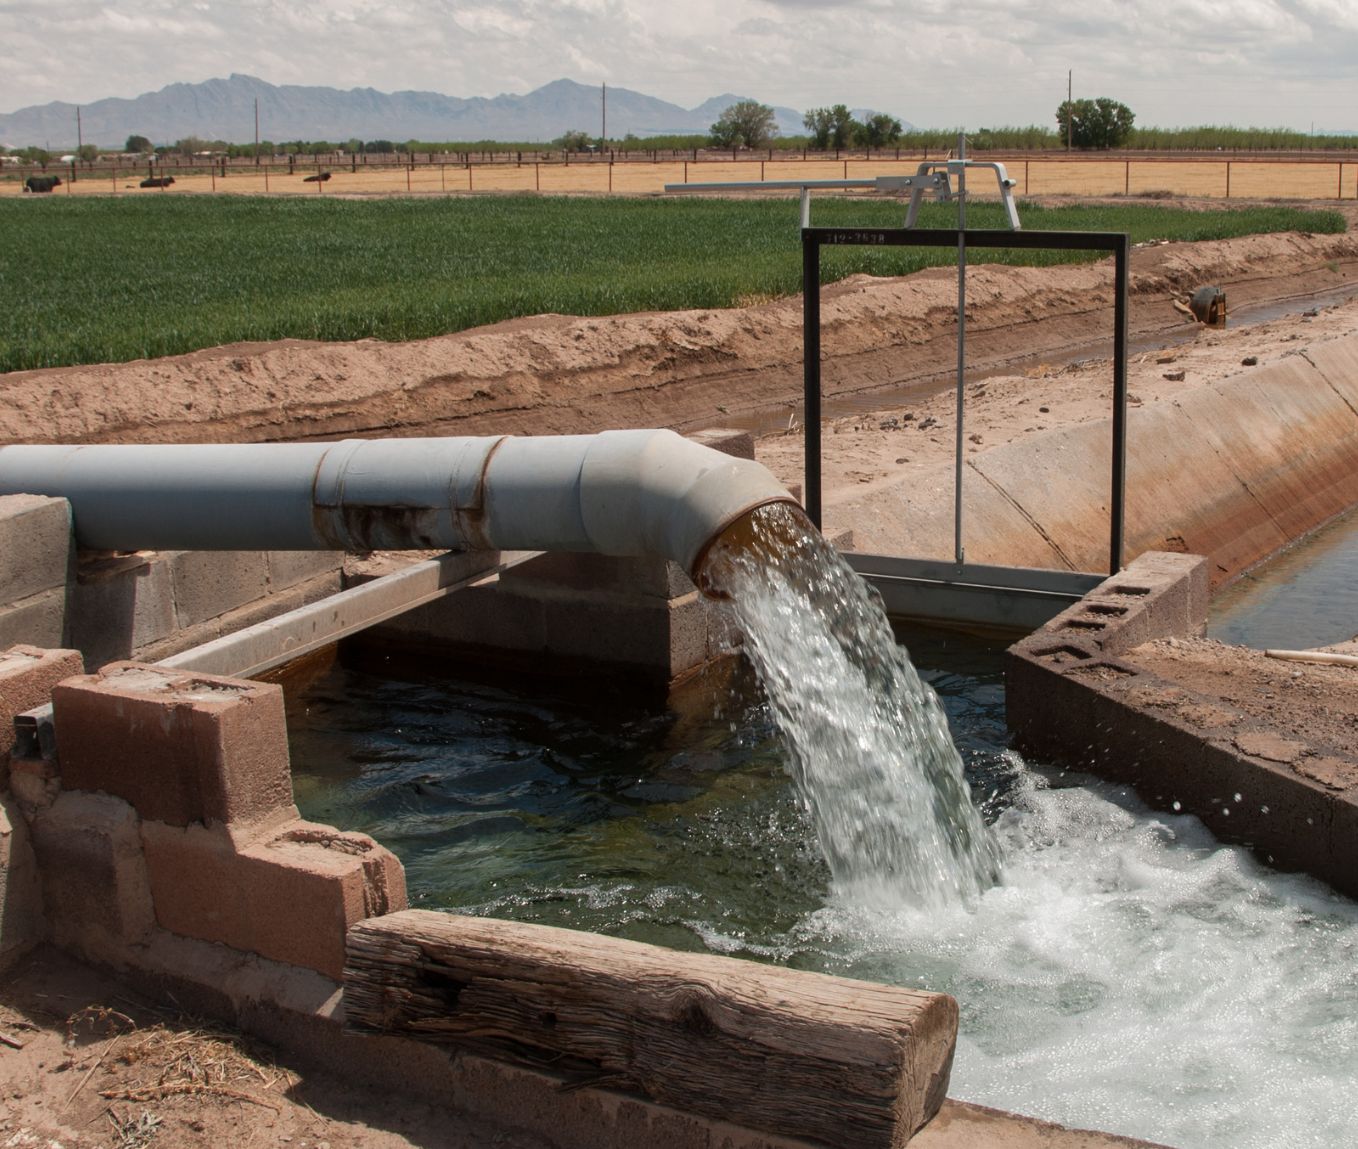 Cómo purificar el agua: Consigue agua potable, limpia y segura 